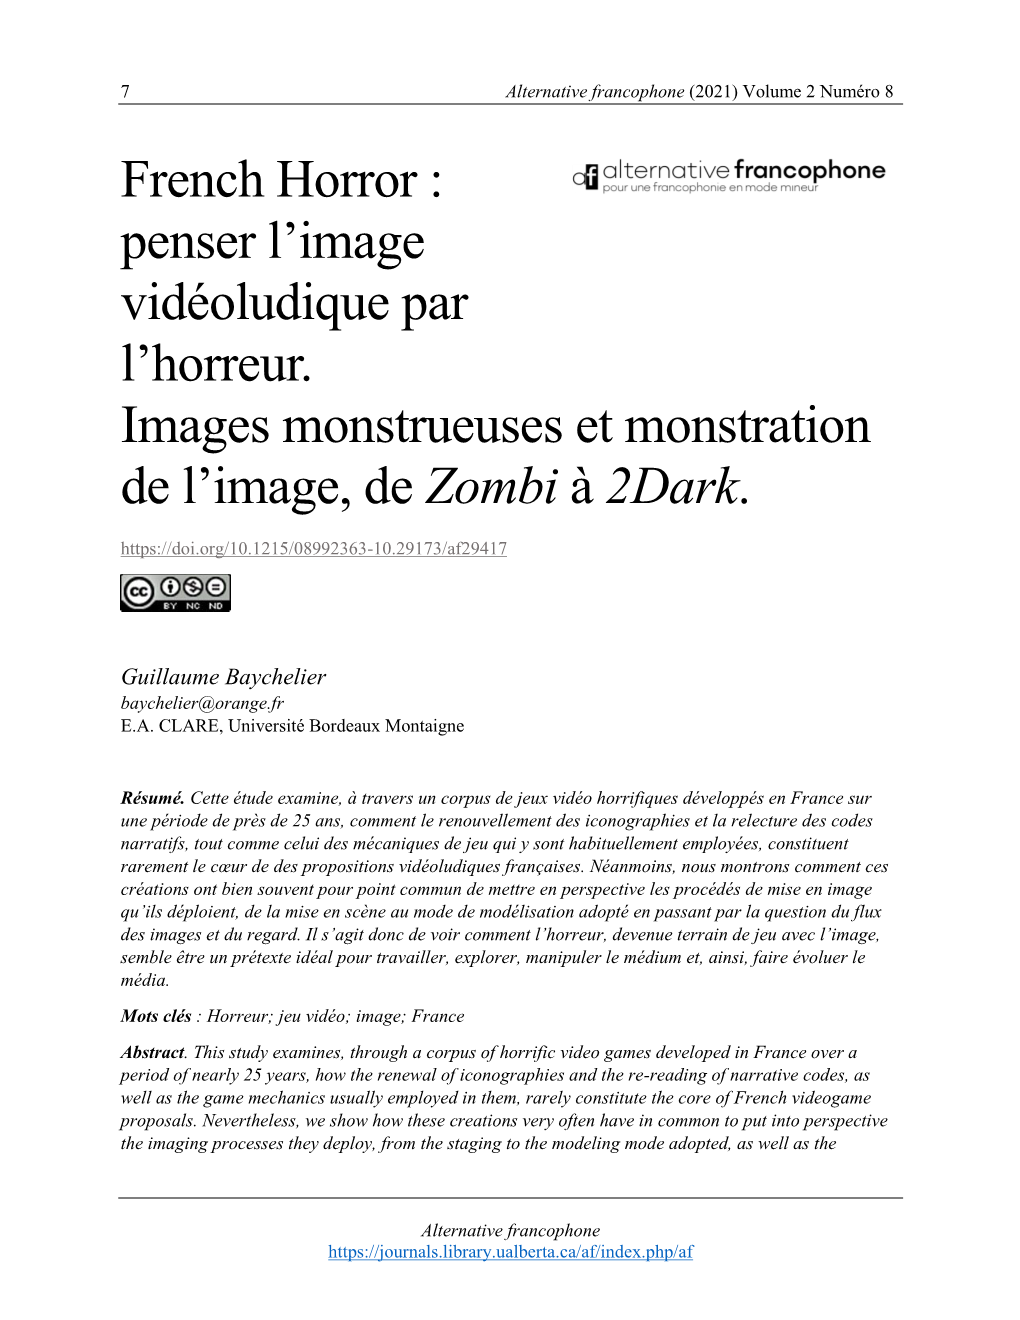 French Horror : Penser L'image Vidéoludique Par L'horreur. Images